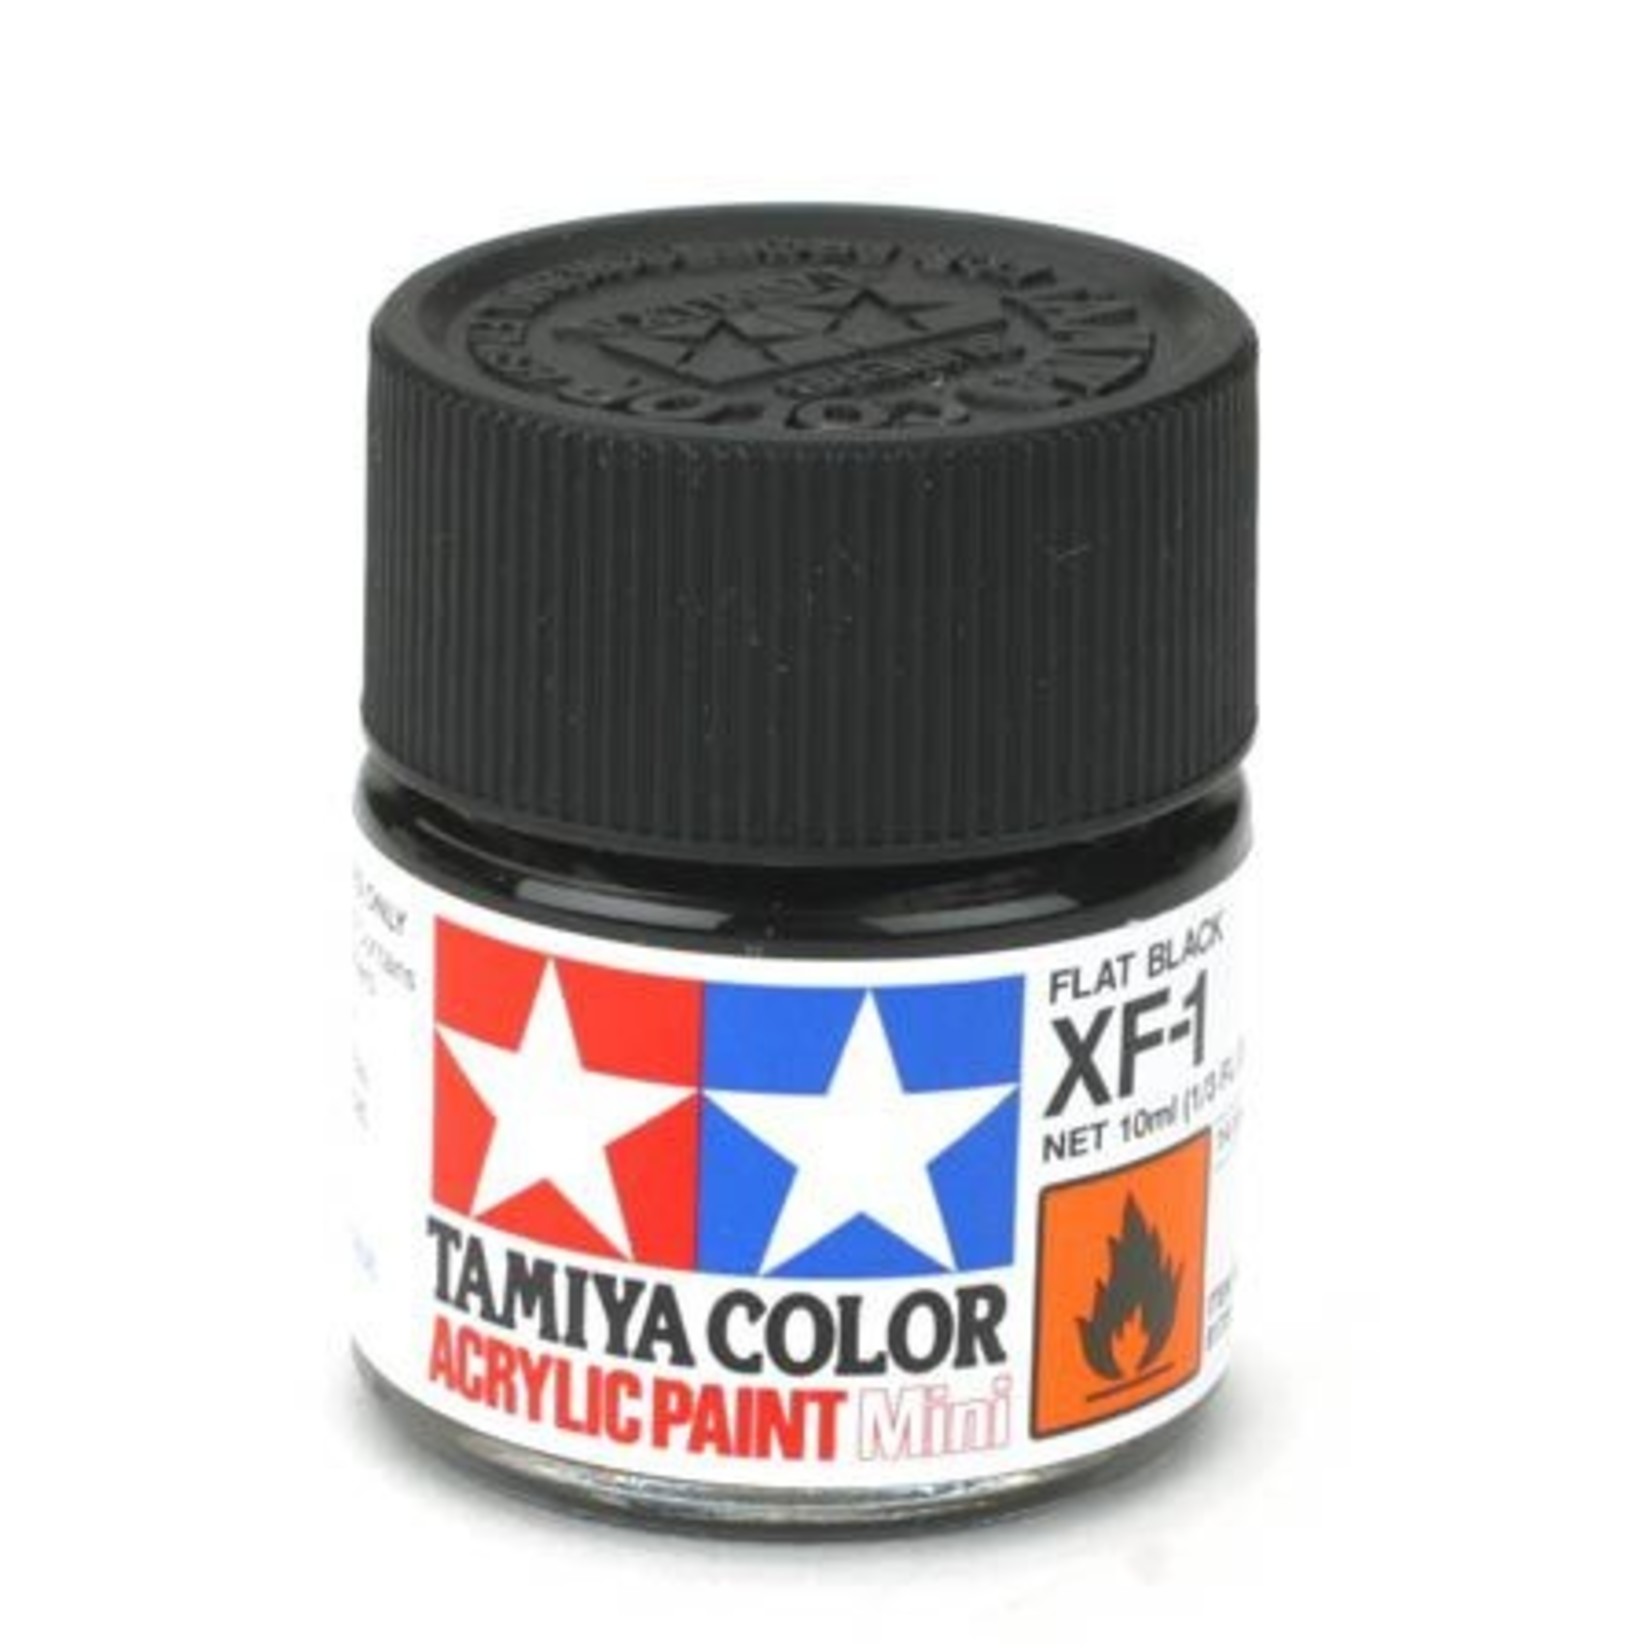 Tamiya Acrylic Mini XF1, Flat Black